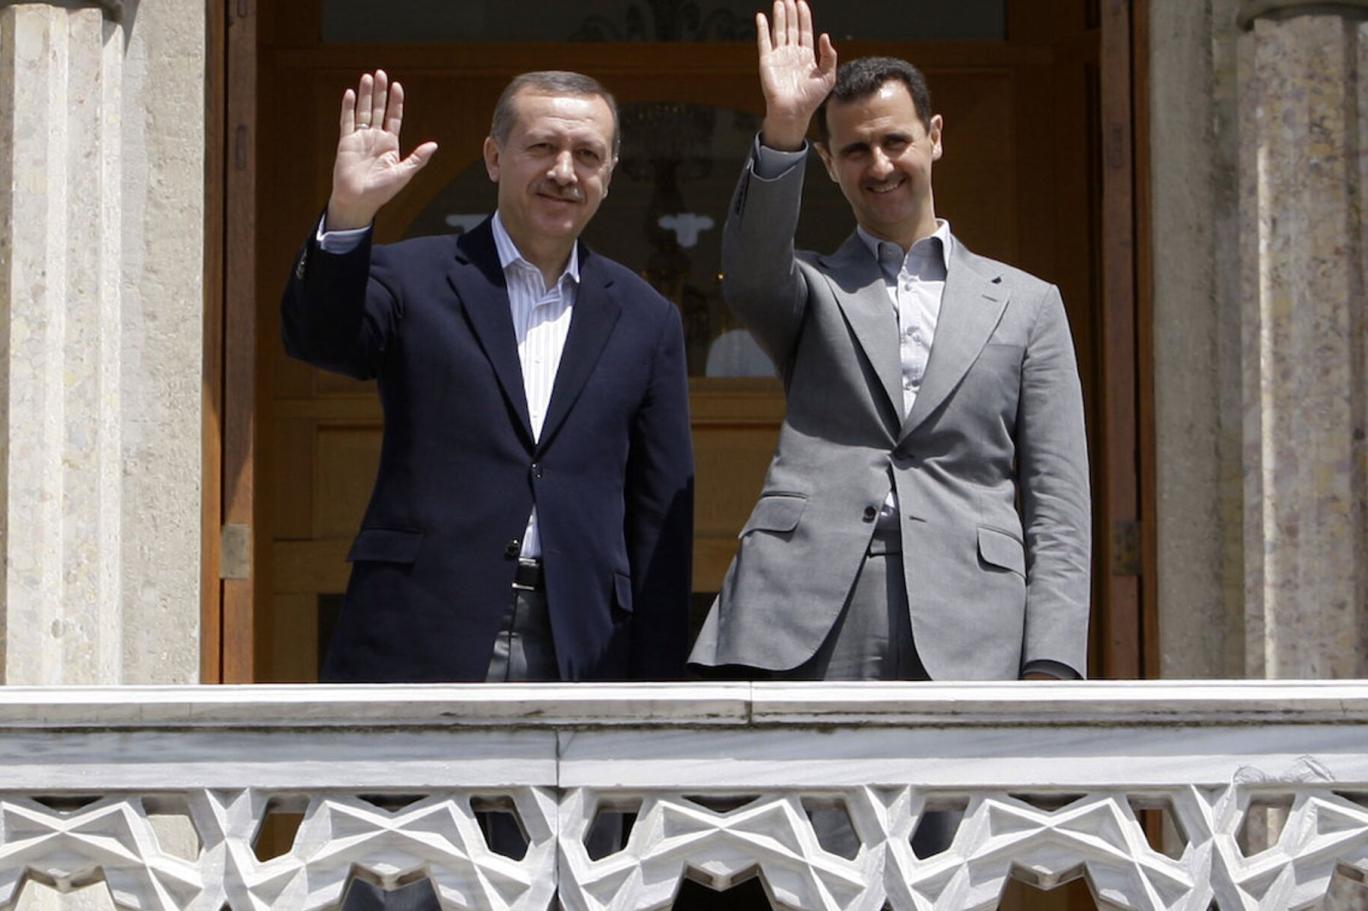 Erdoğan'ın son açıklamalarının Esad yönetimindeki yankısı: Dışişleri'nde  istekliler var ama ordu yakınlaşmaya taraftar değil | Independent Türkçe